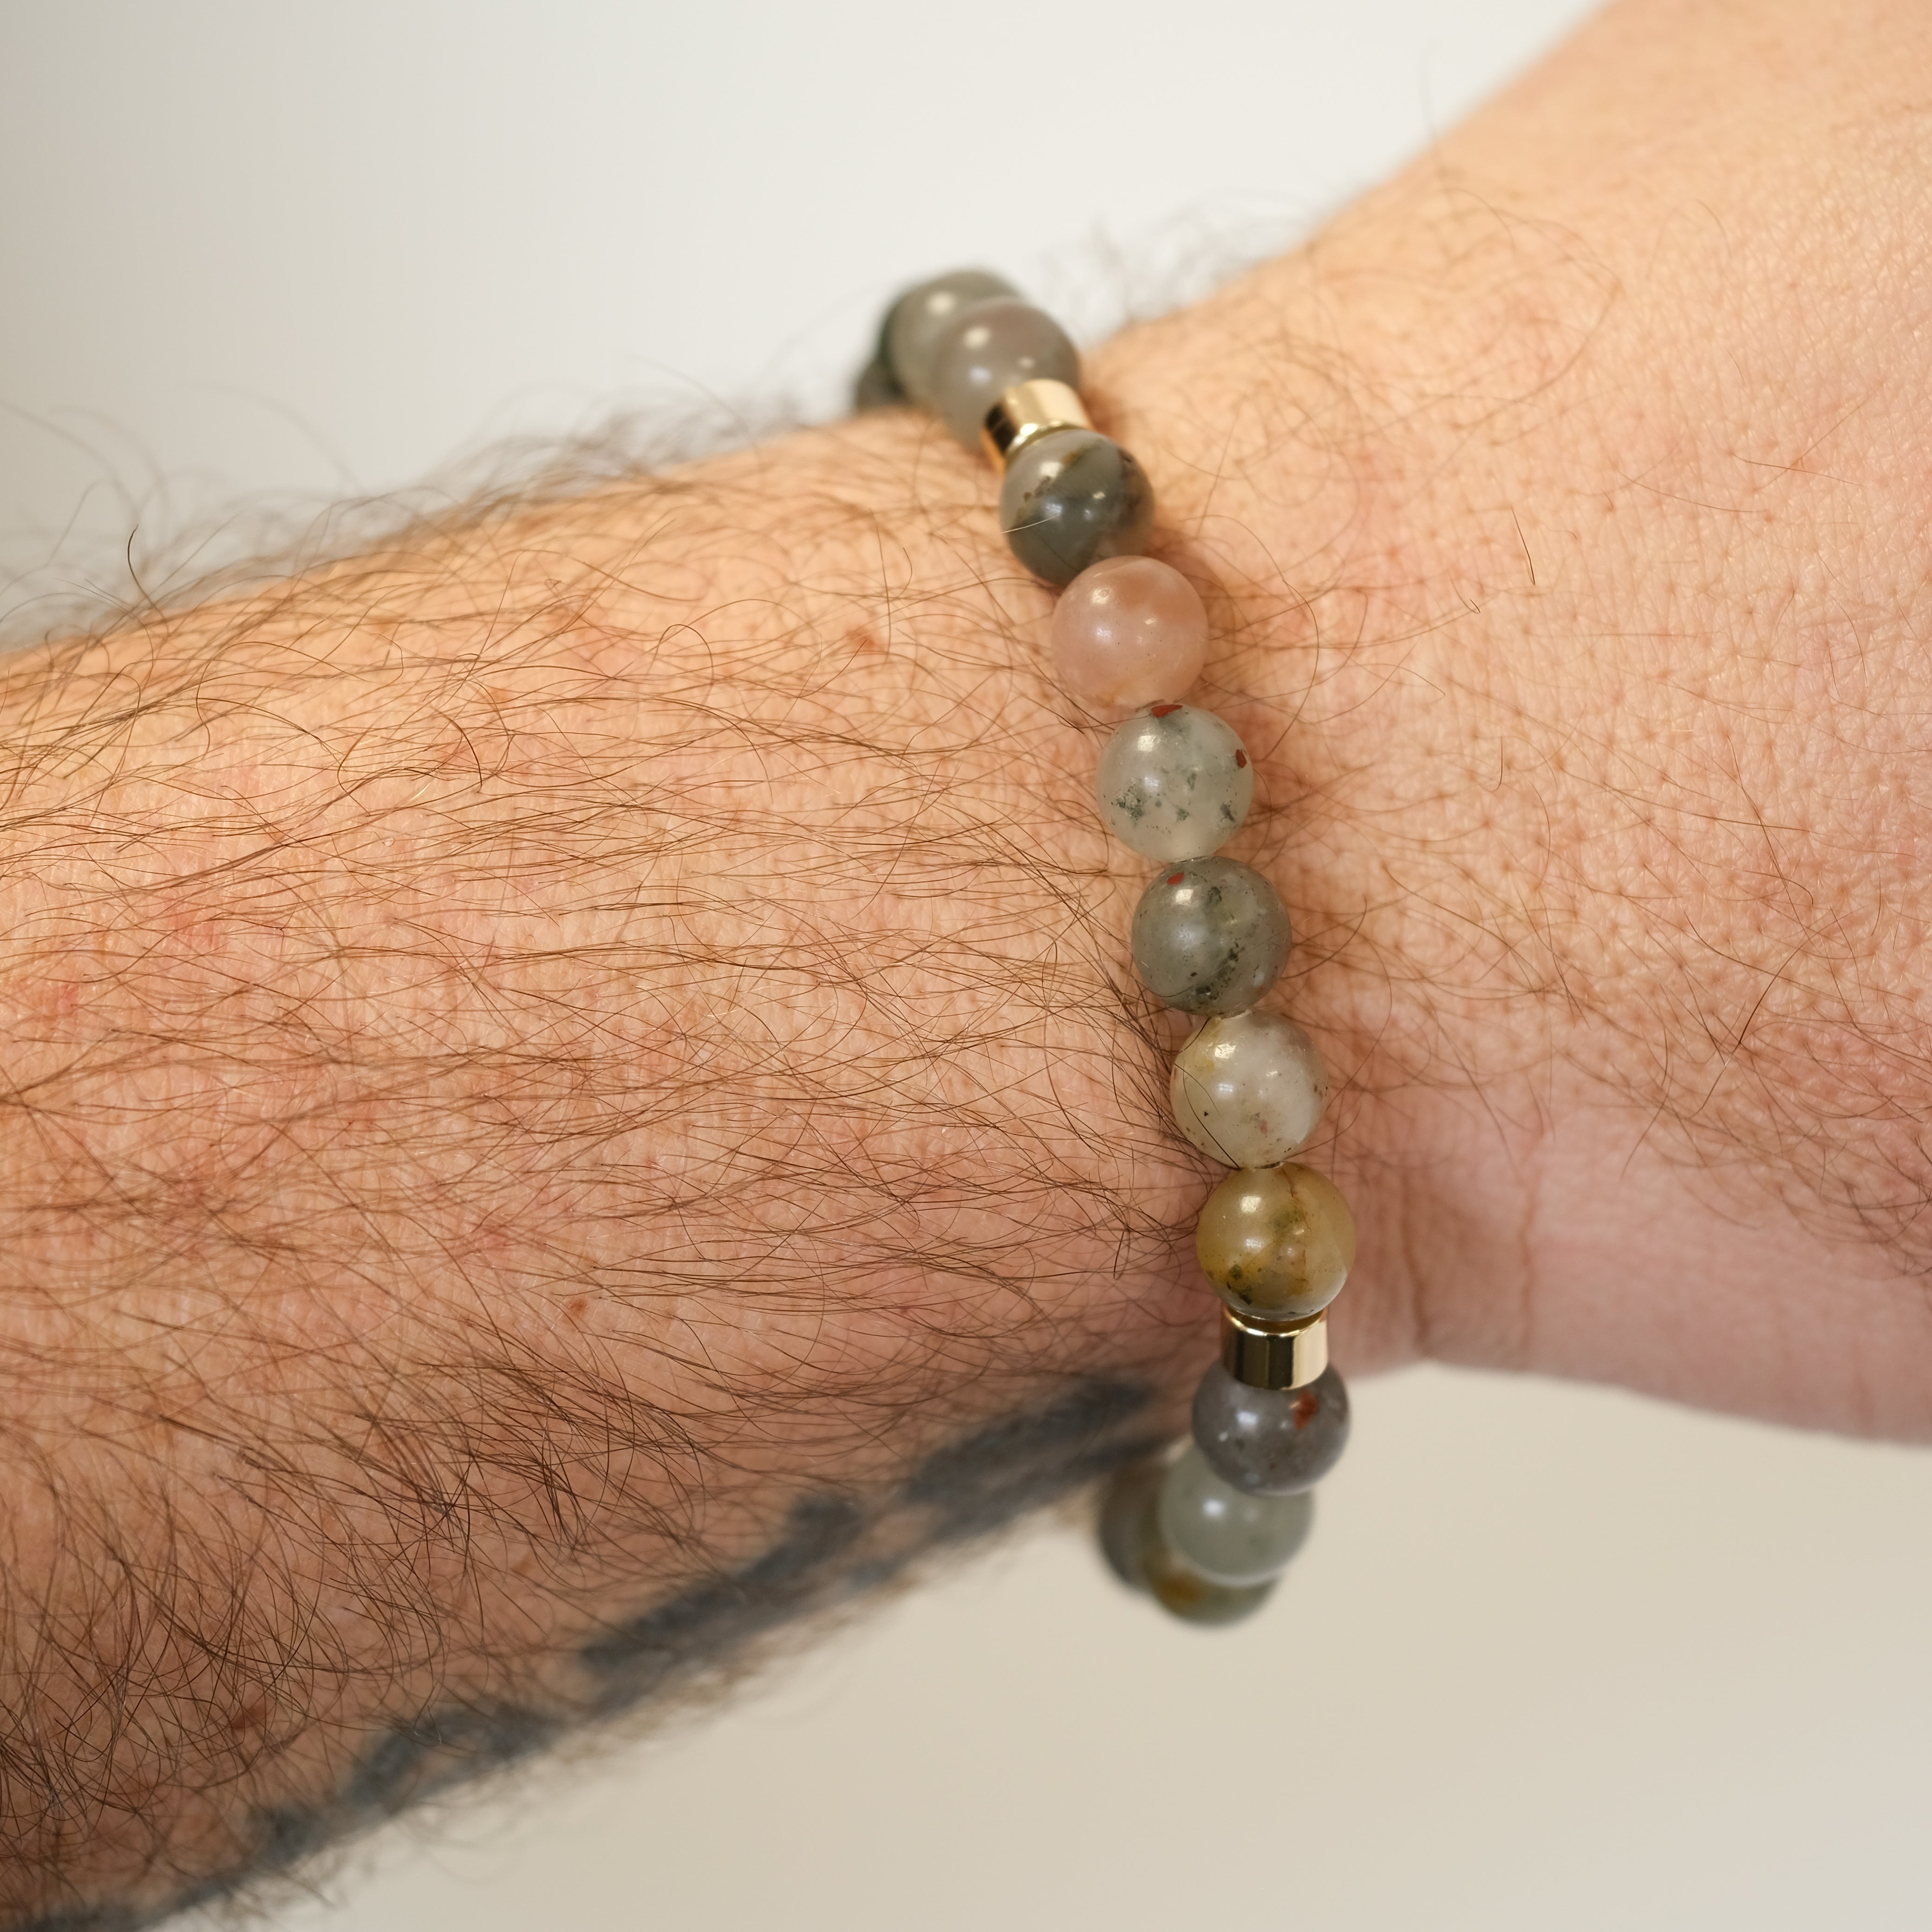 A bloodstone gemstone bracelet worn on a model's wrist